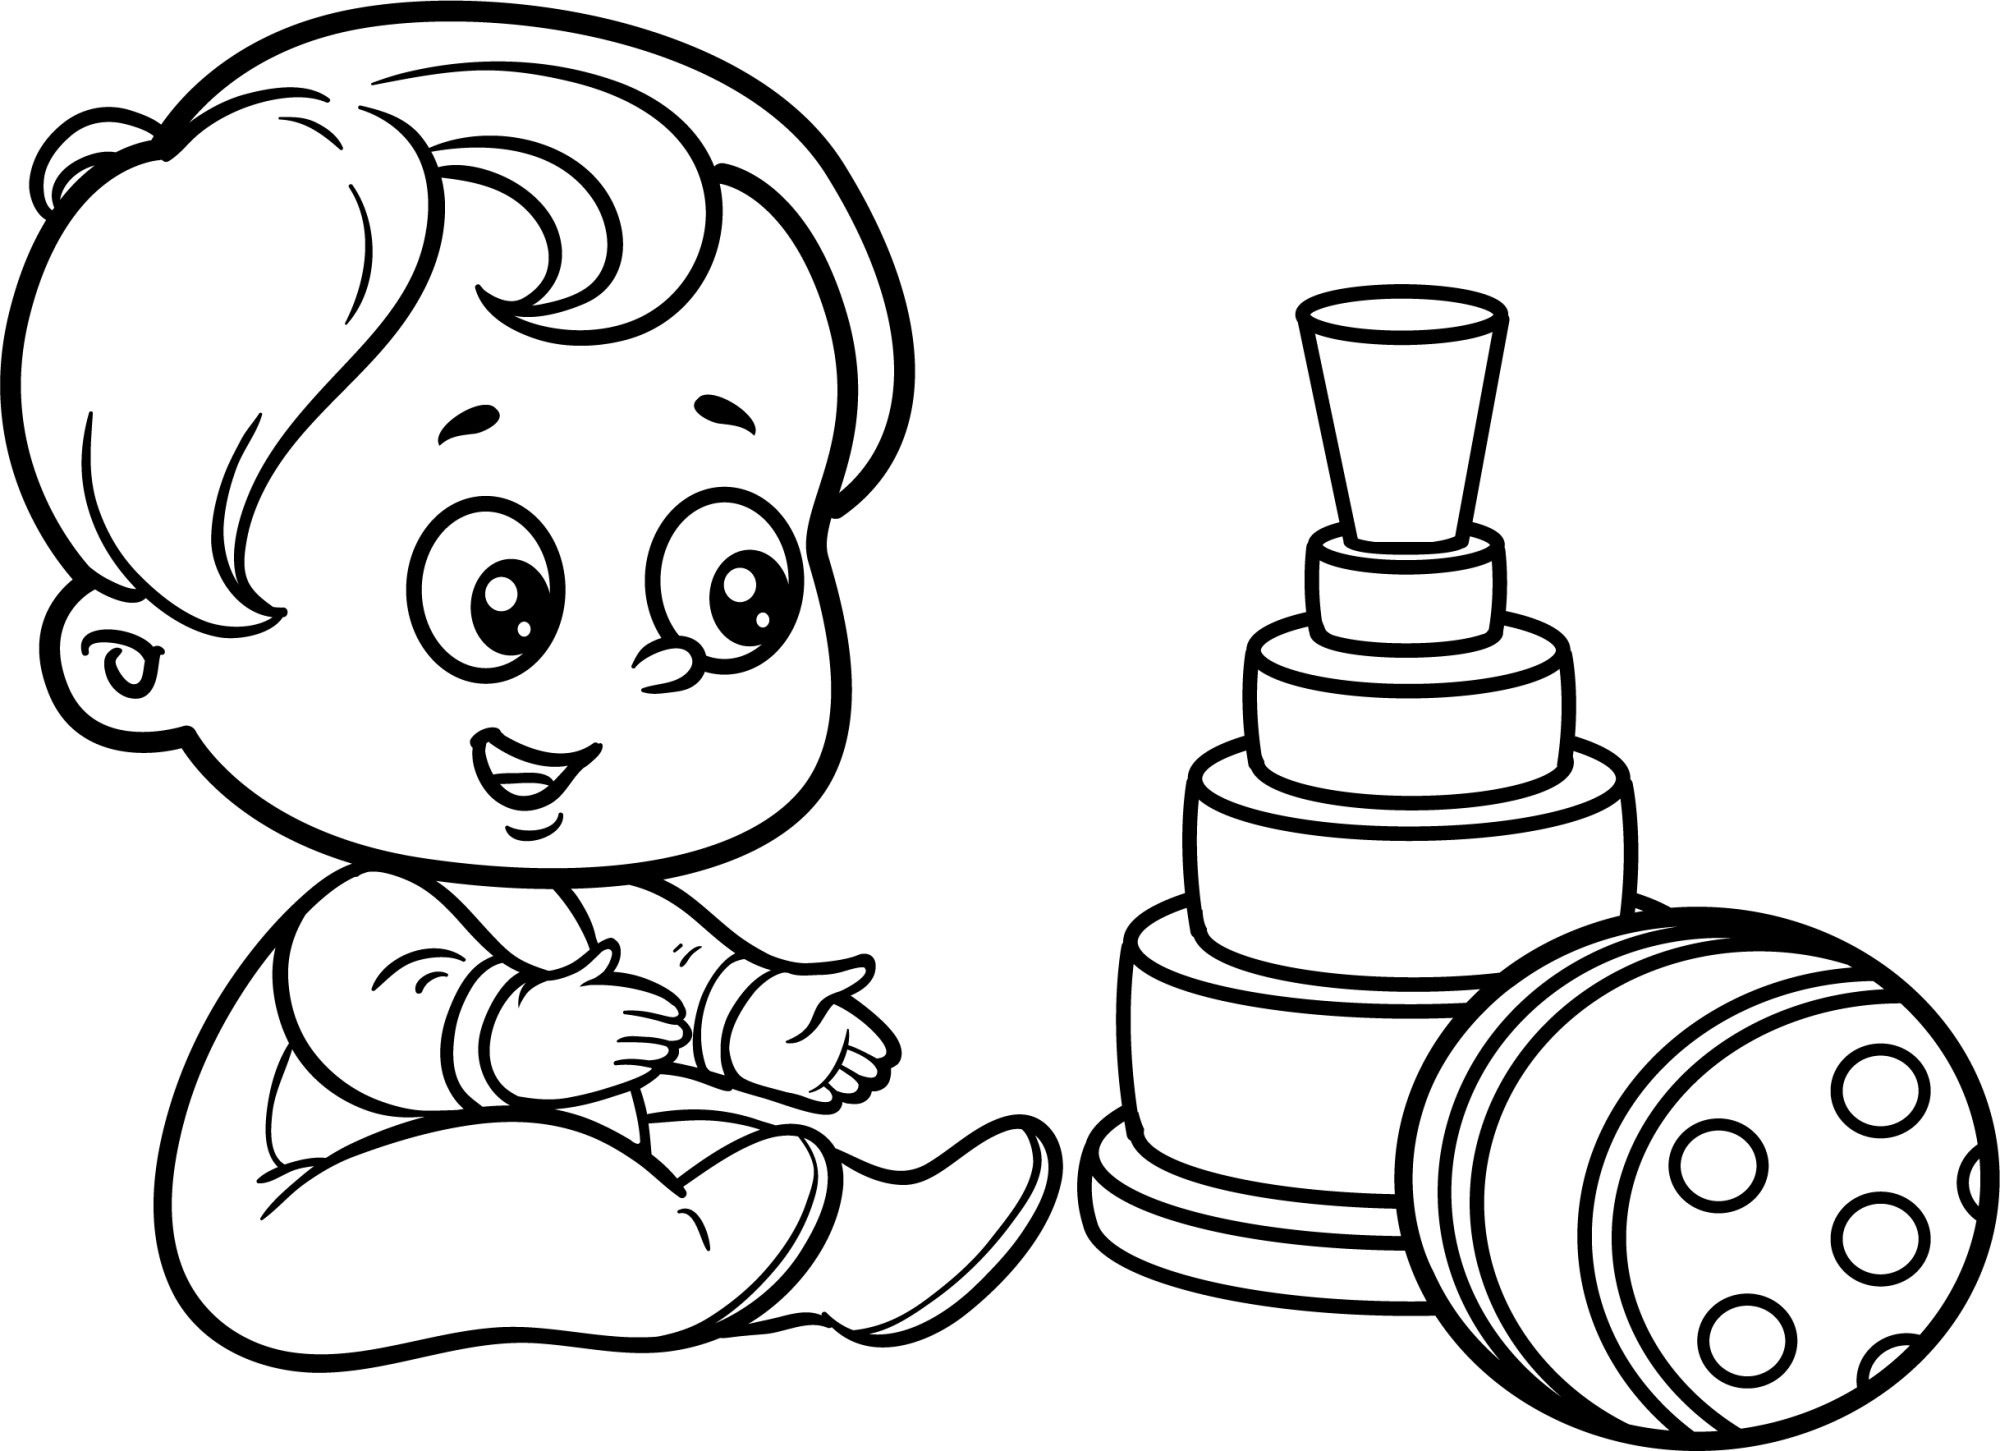 Раскраска для детей: малыш с игрушками